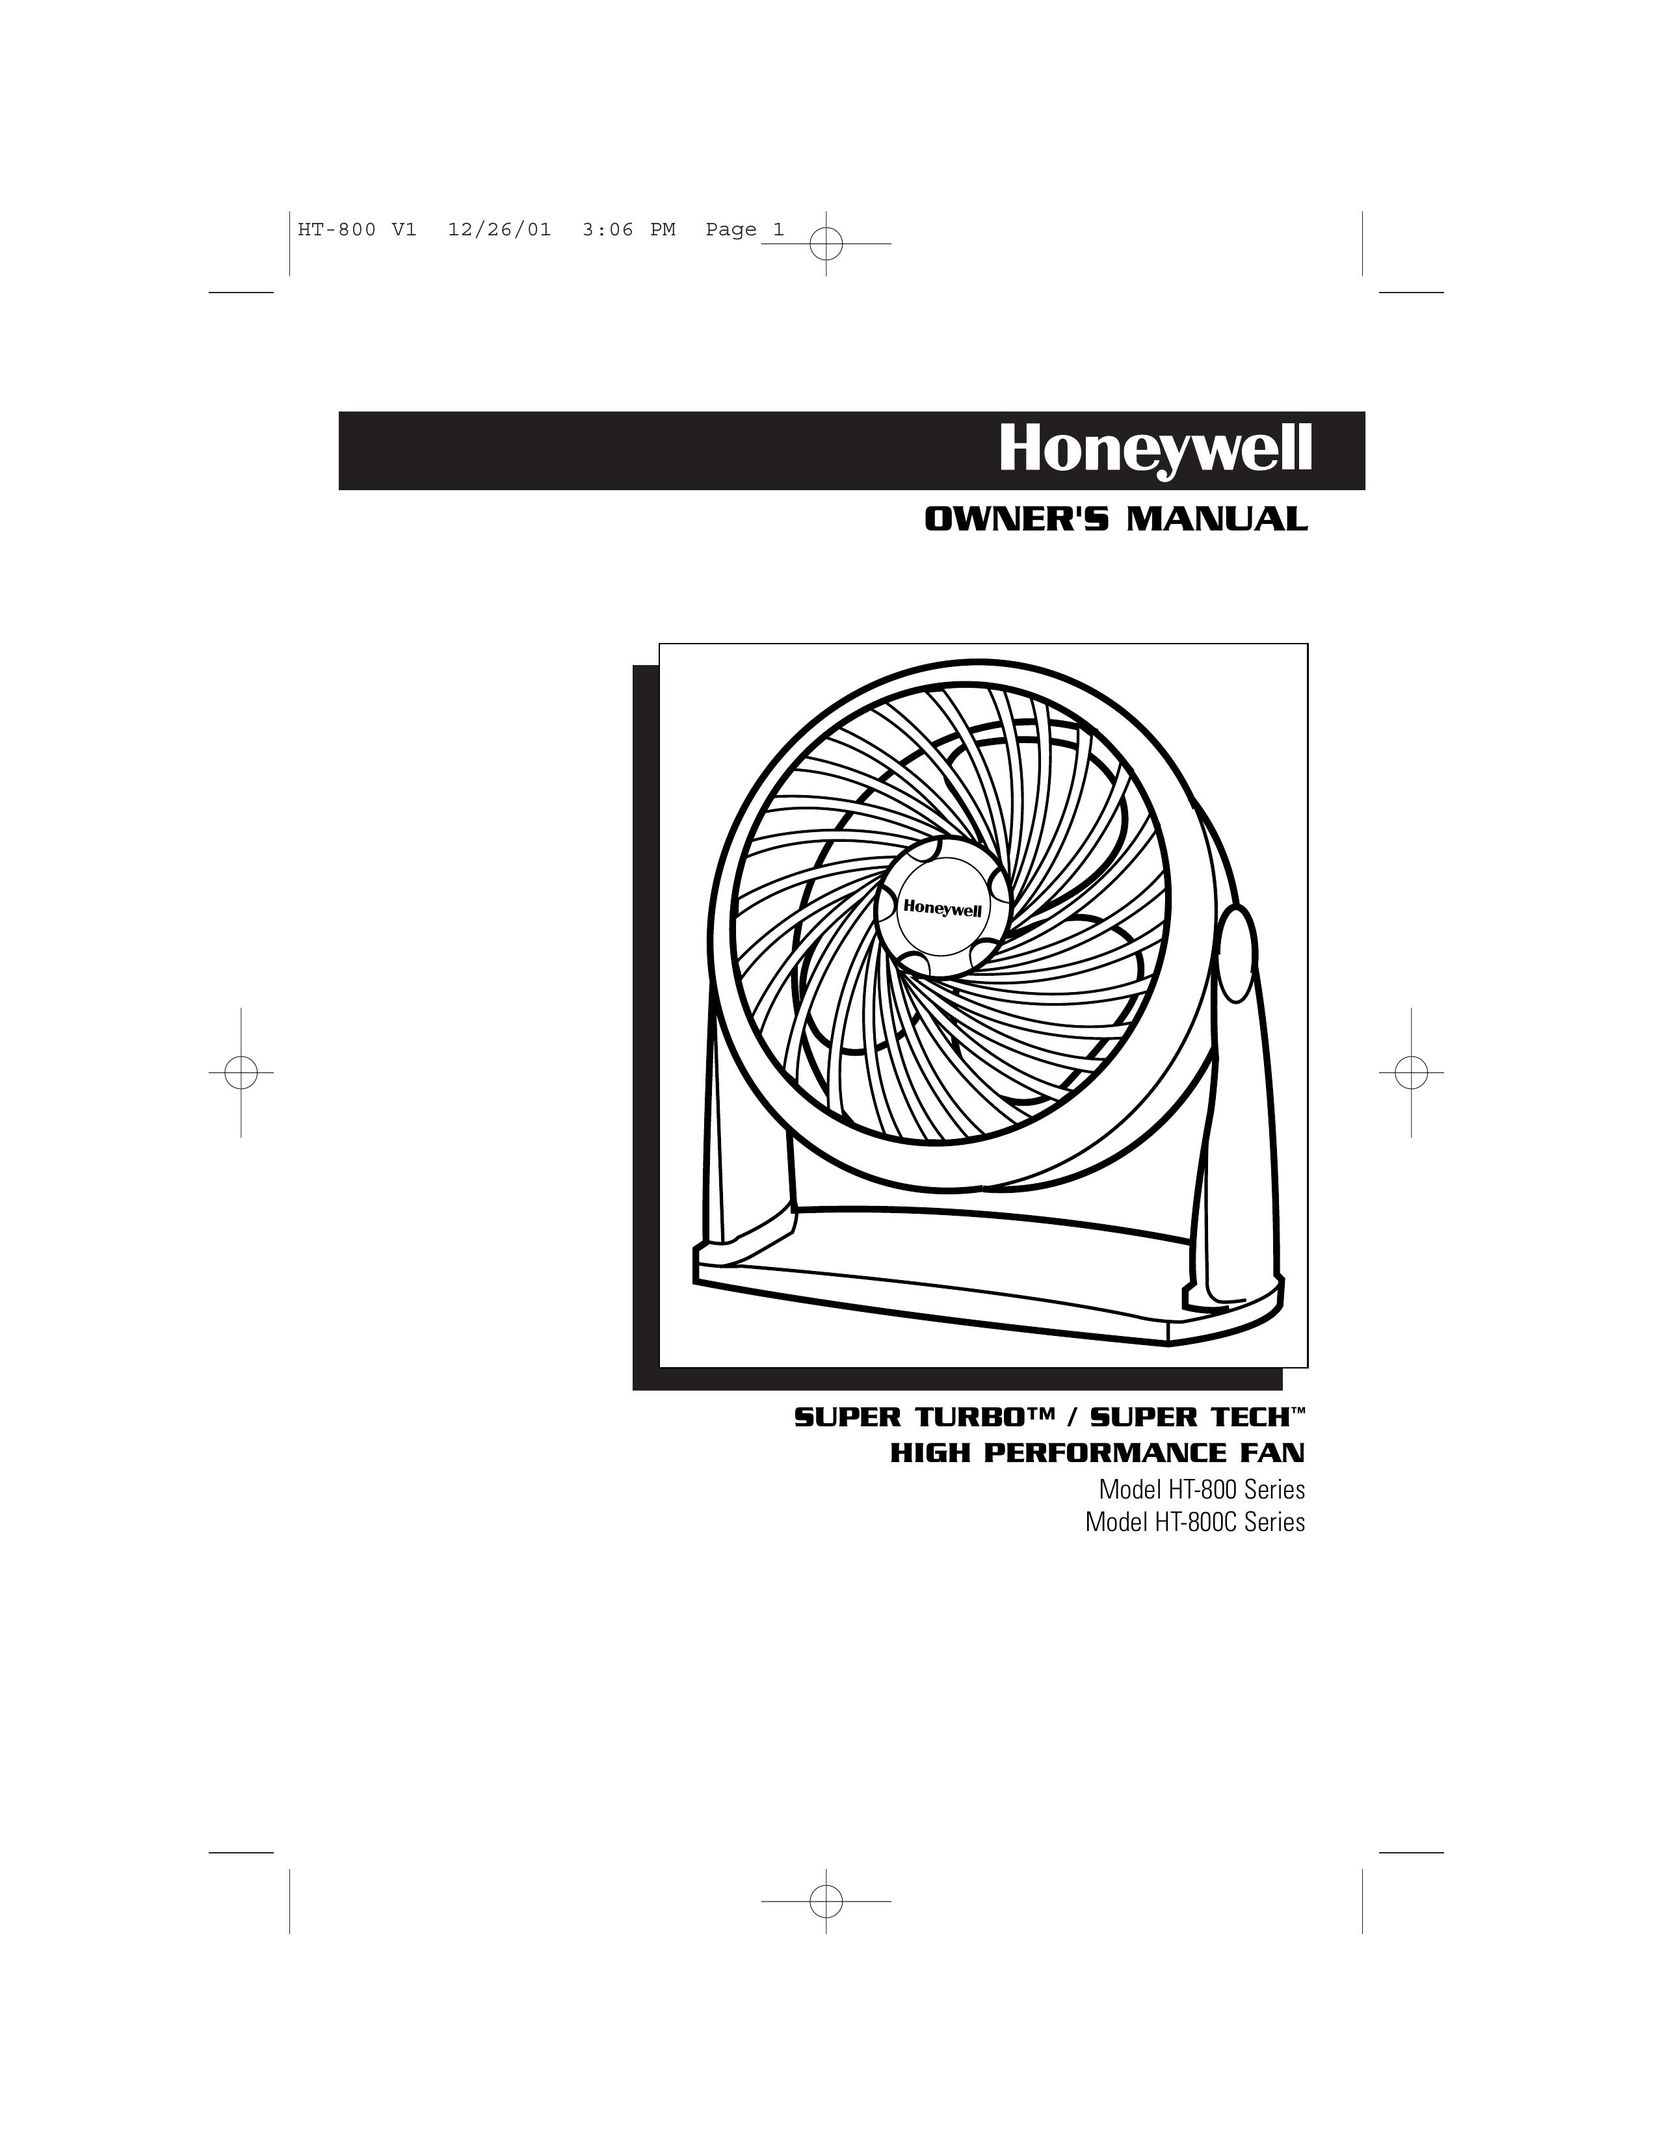 Honeywell HT-800 Fan User Manual